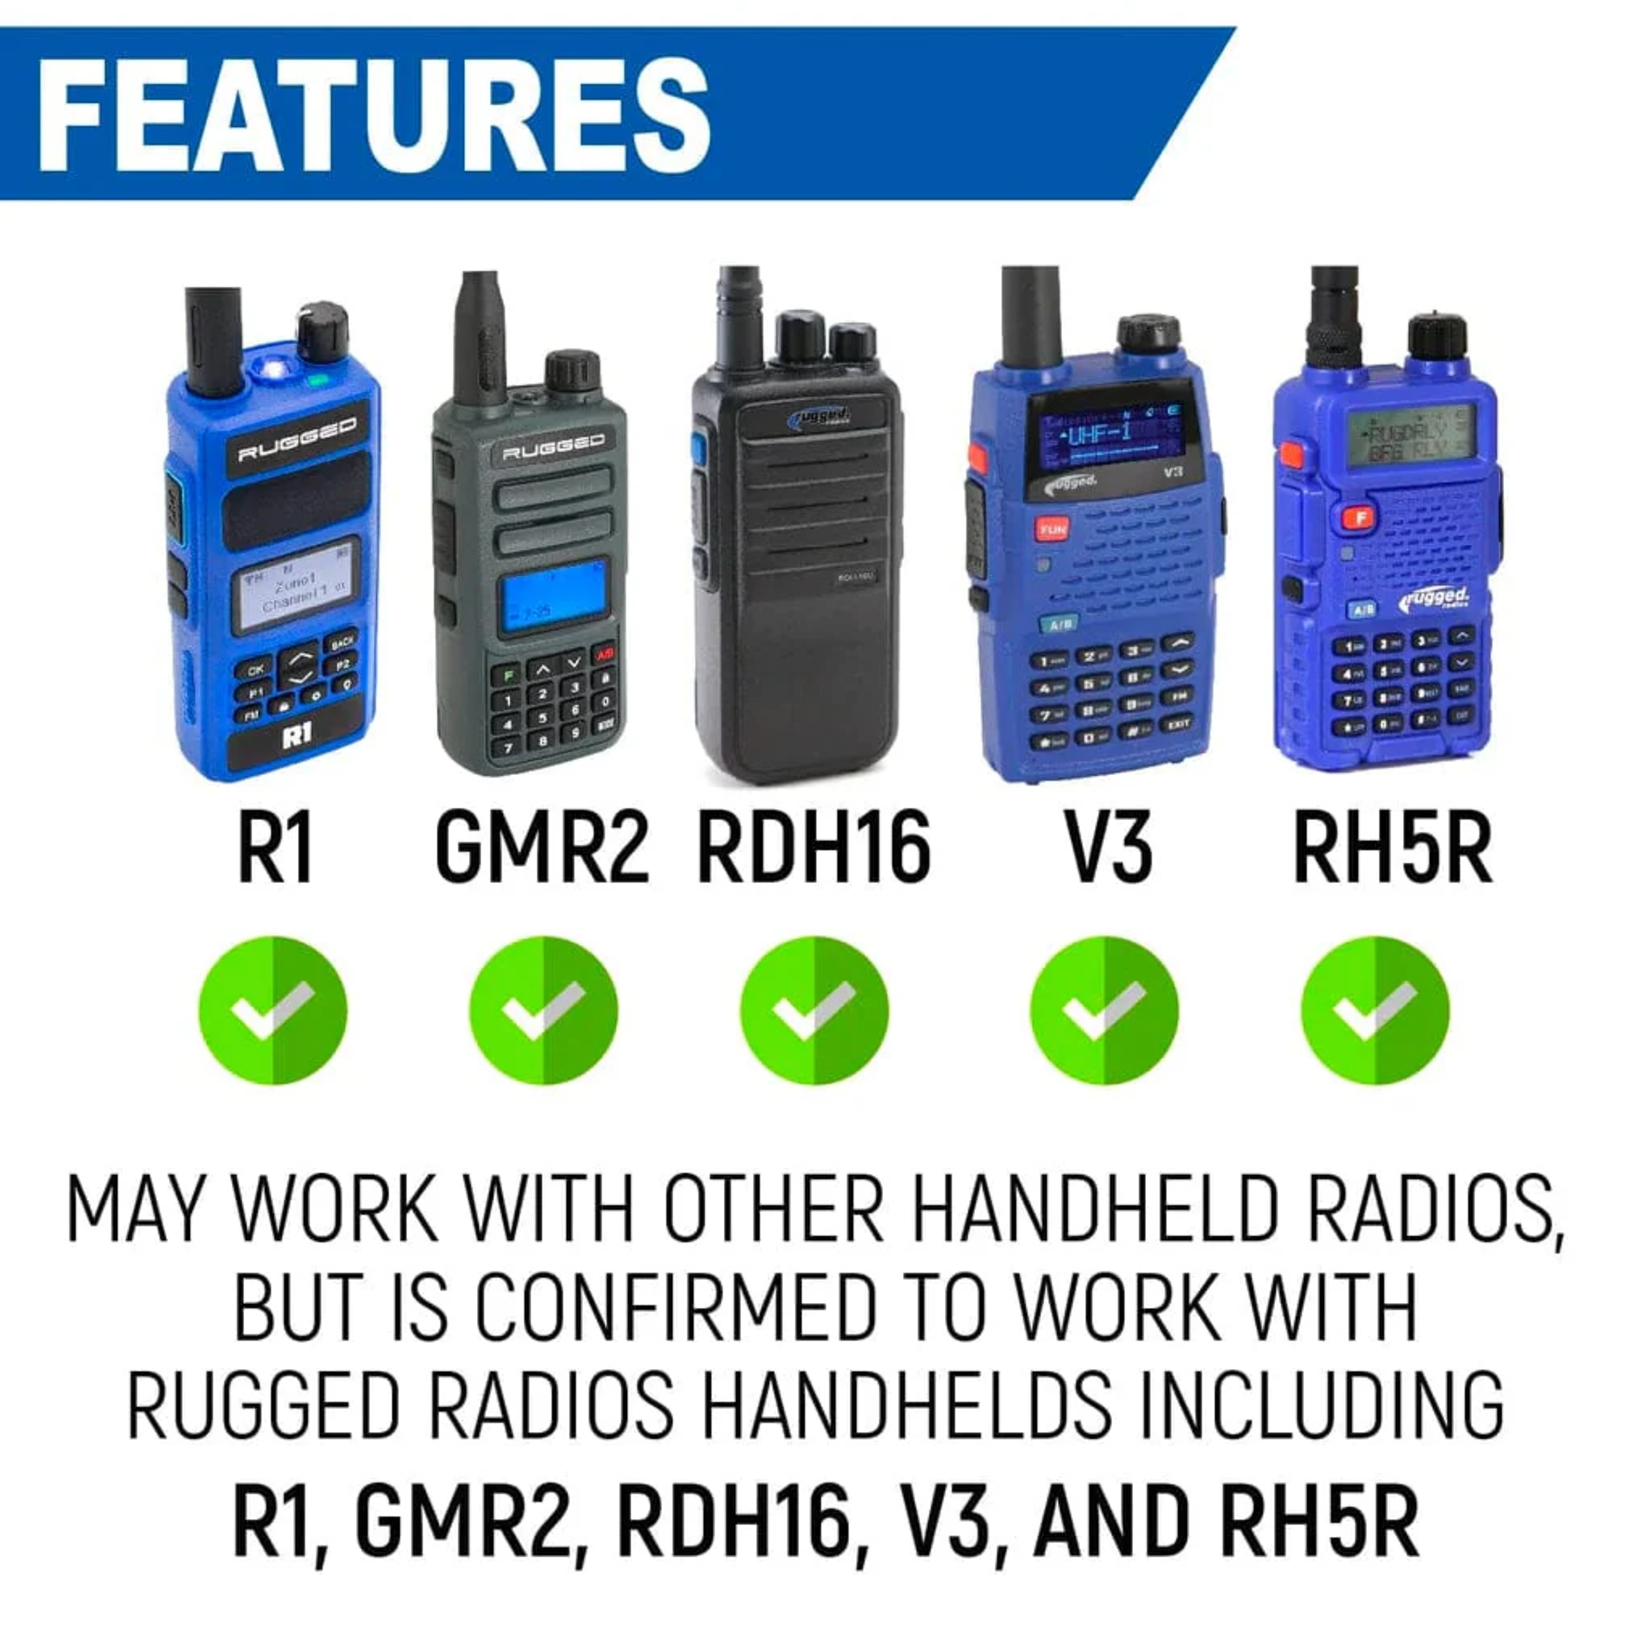 Rugged Radios Rugged Radios Handheld Radio Mount for R1 / GMR2 / RDH16 / V3 / RH5R